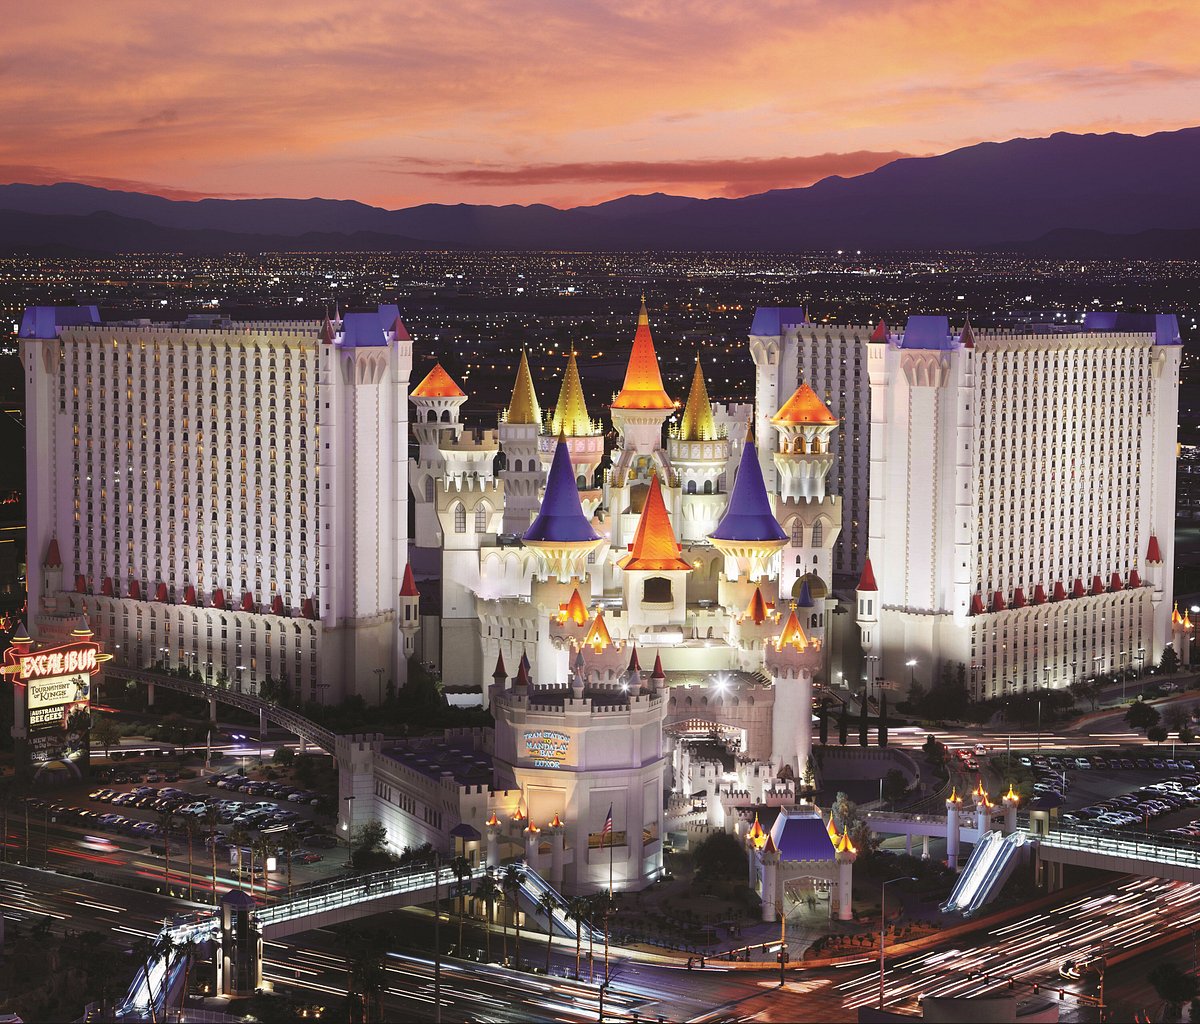 10 Best Hotels in Las Vegas – Top Las Vegas Hotels